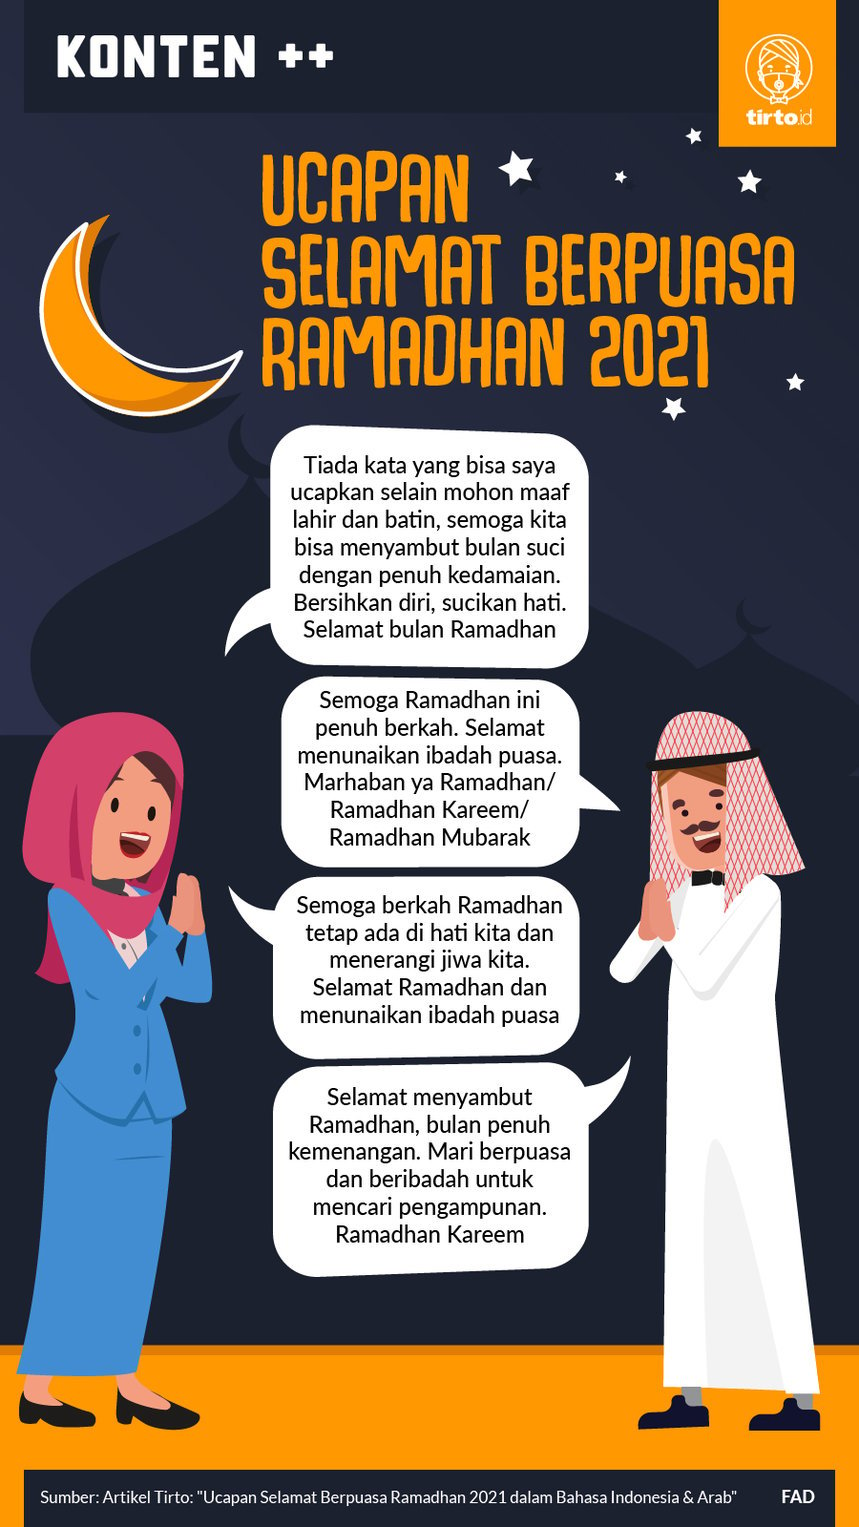 Ucapan ramadhan 2021